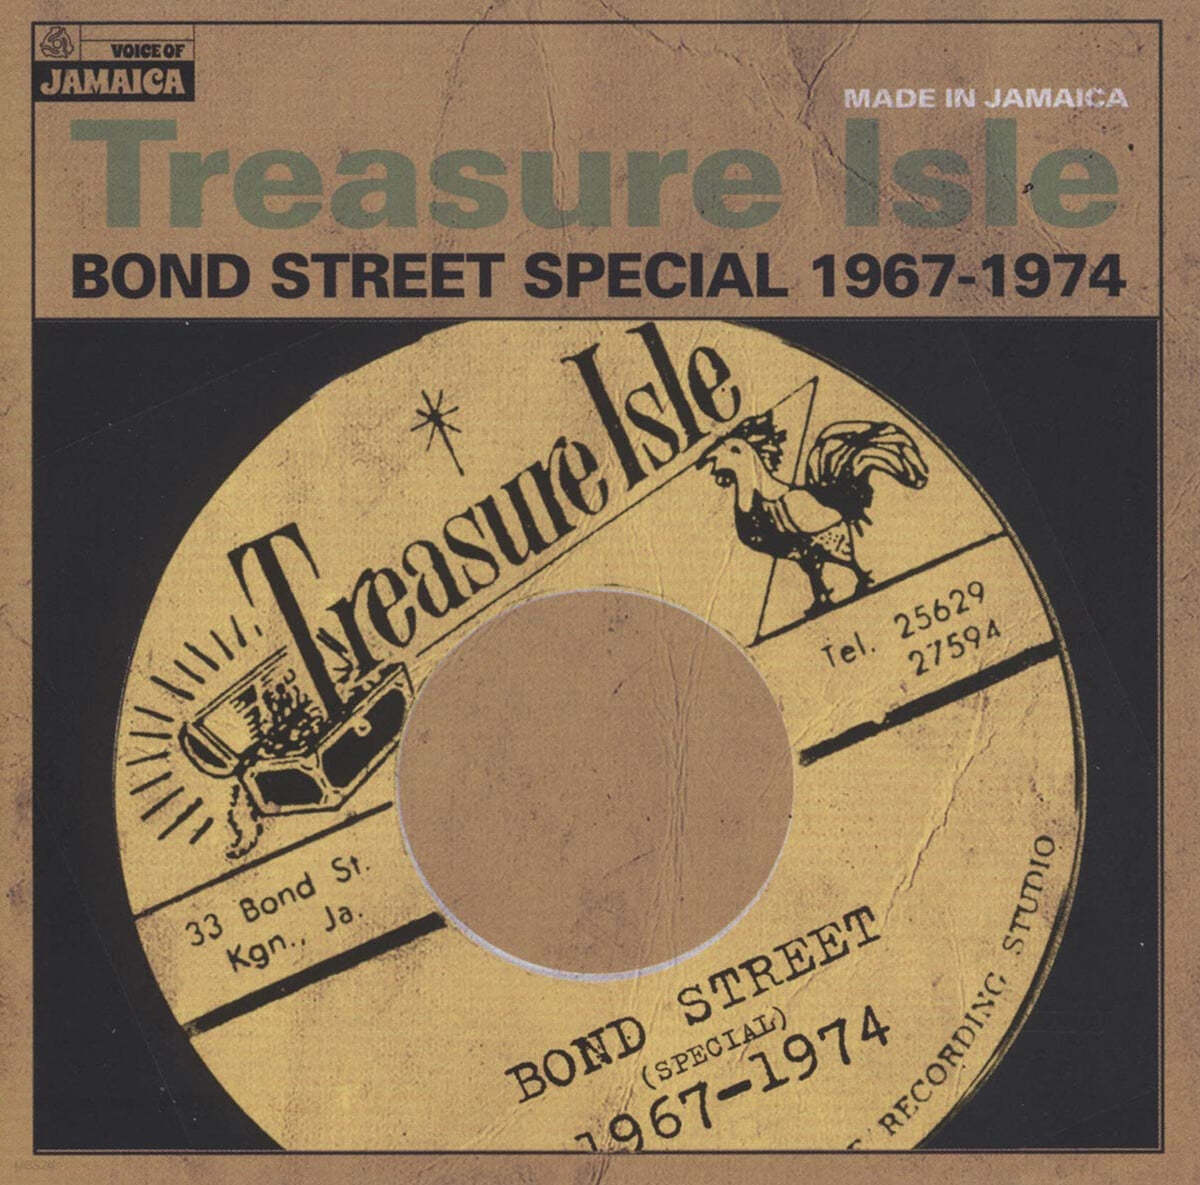 락 스테디 - 레게 음악 모음 (Treasure Isle Bond Street Special 1967-1974) [LP] 